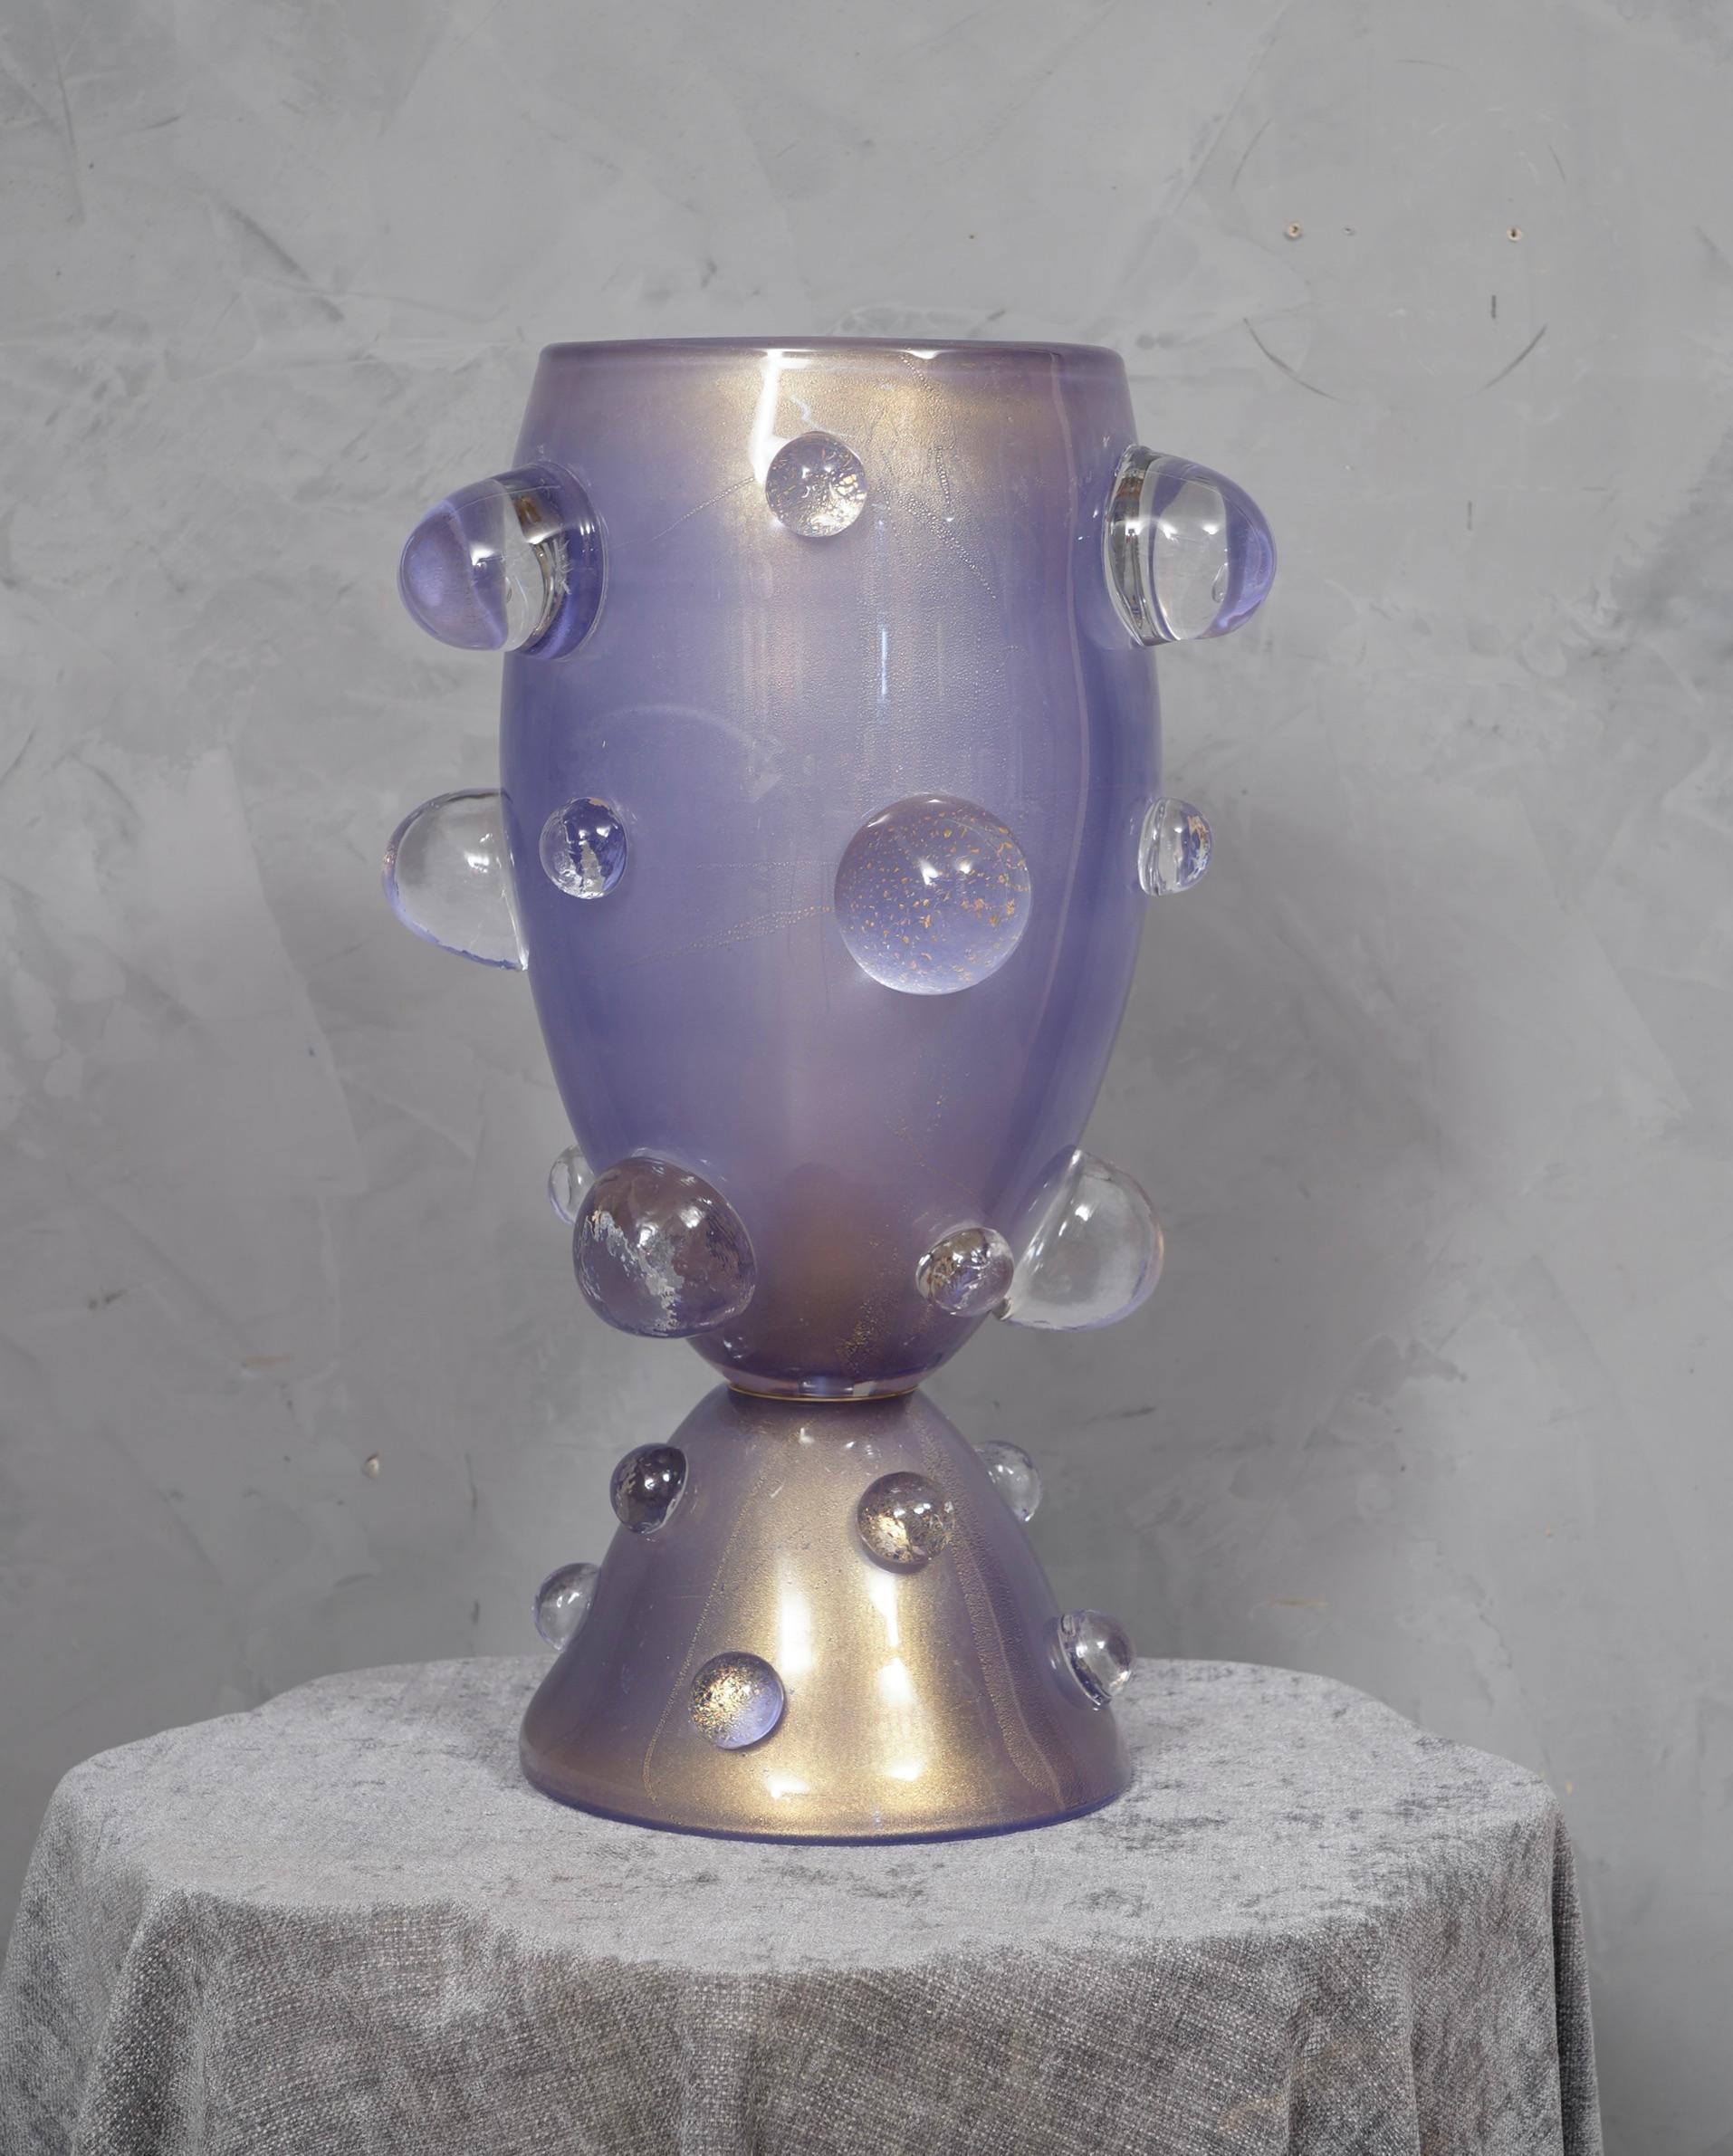 Splendides lampes de table de Murano poinçonnées Barovier & Toso. Une suprême couleur pervenche claire. Design élégant et très particulier grâce à ces grandes demi-sphères attachées à la grande coupe.

Les lampes de table sont composées d'une